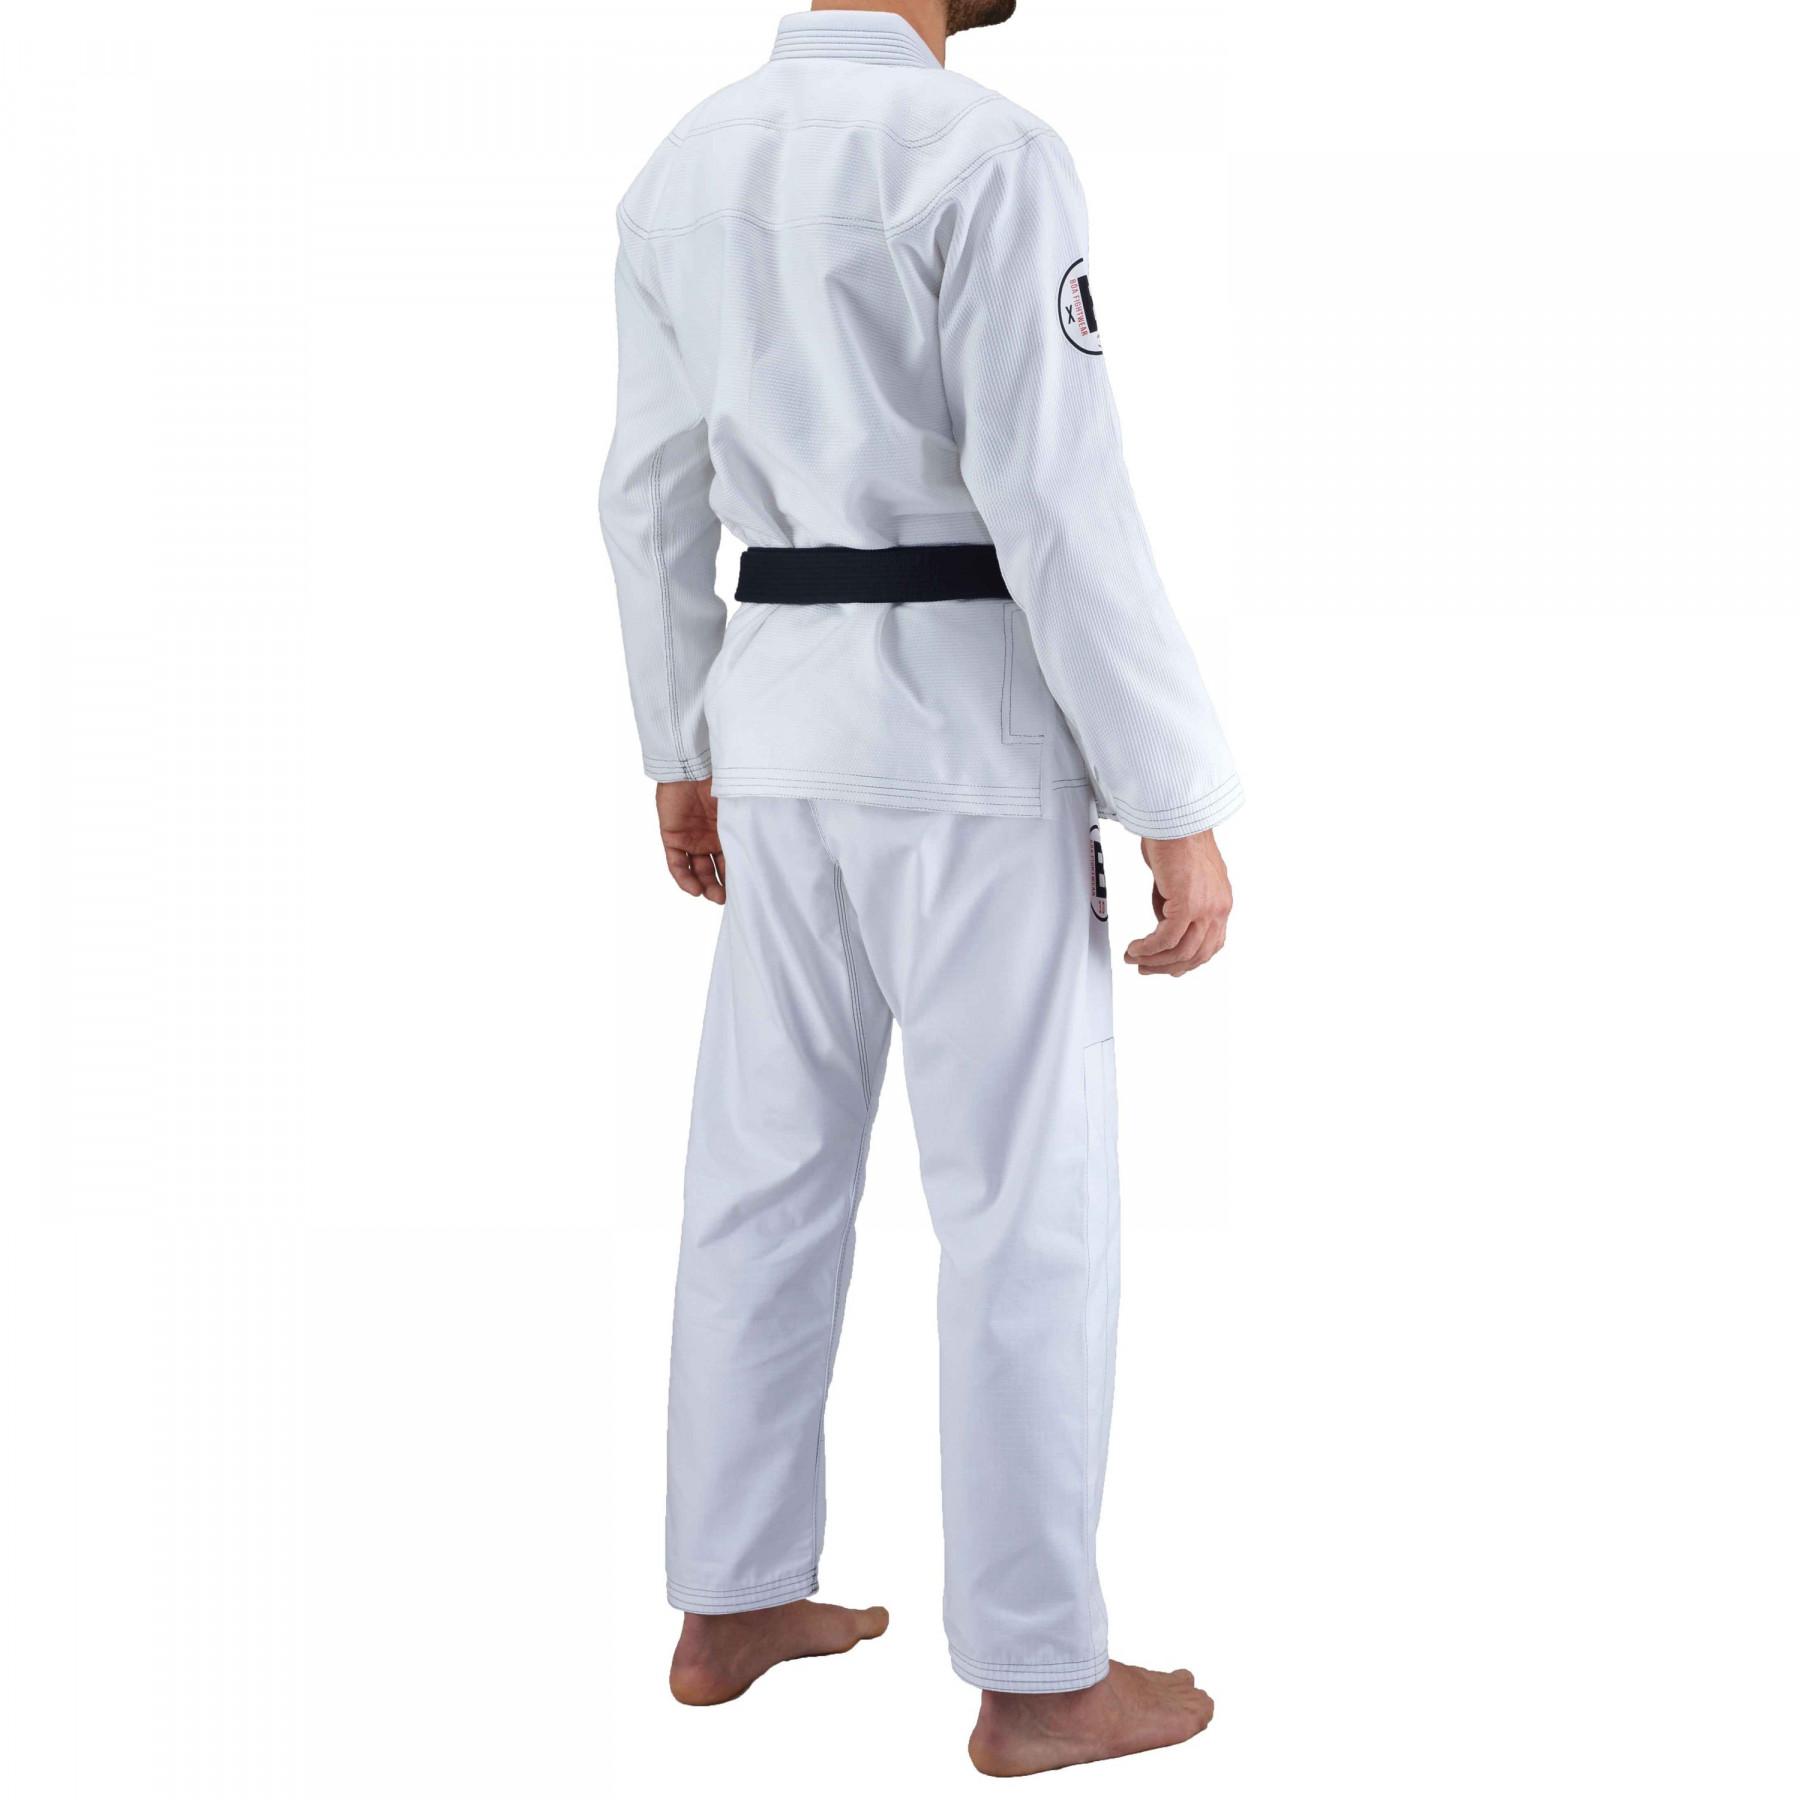 Kimono av jjb Bõa Armor de Competiçao 3.0 Blanc